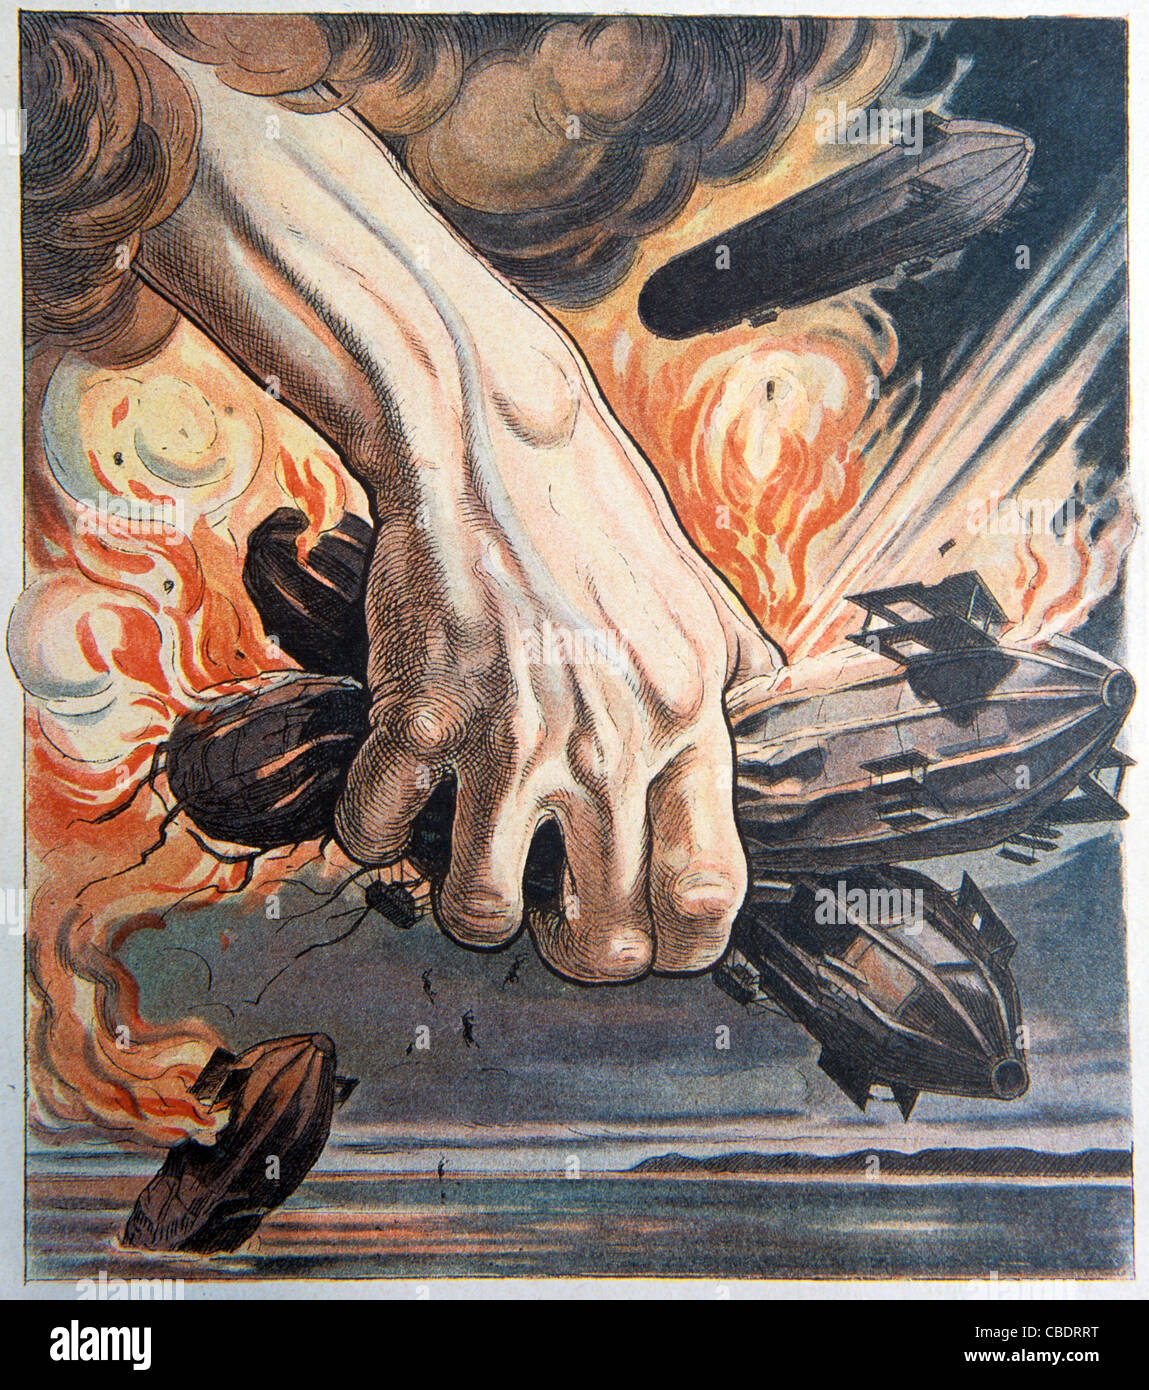 Zeppeline im deutschen Luftangriffe verwendet. Ersten Weltkrieg Propaganda. Ausgabe des französischen satirischen Zeitschrift "Le Rire", März 1915 Krieg Stockfoto